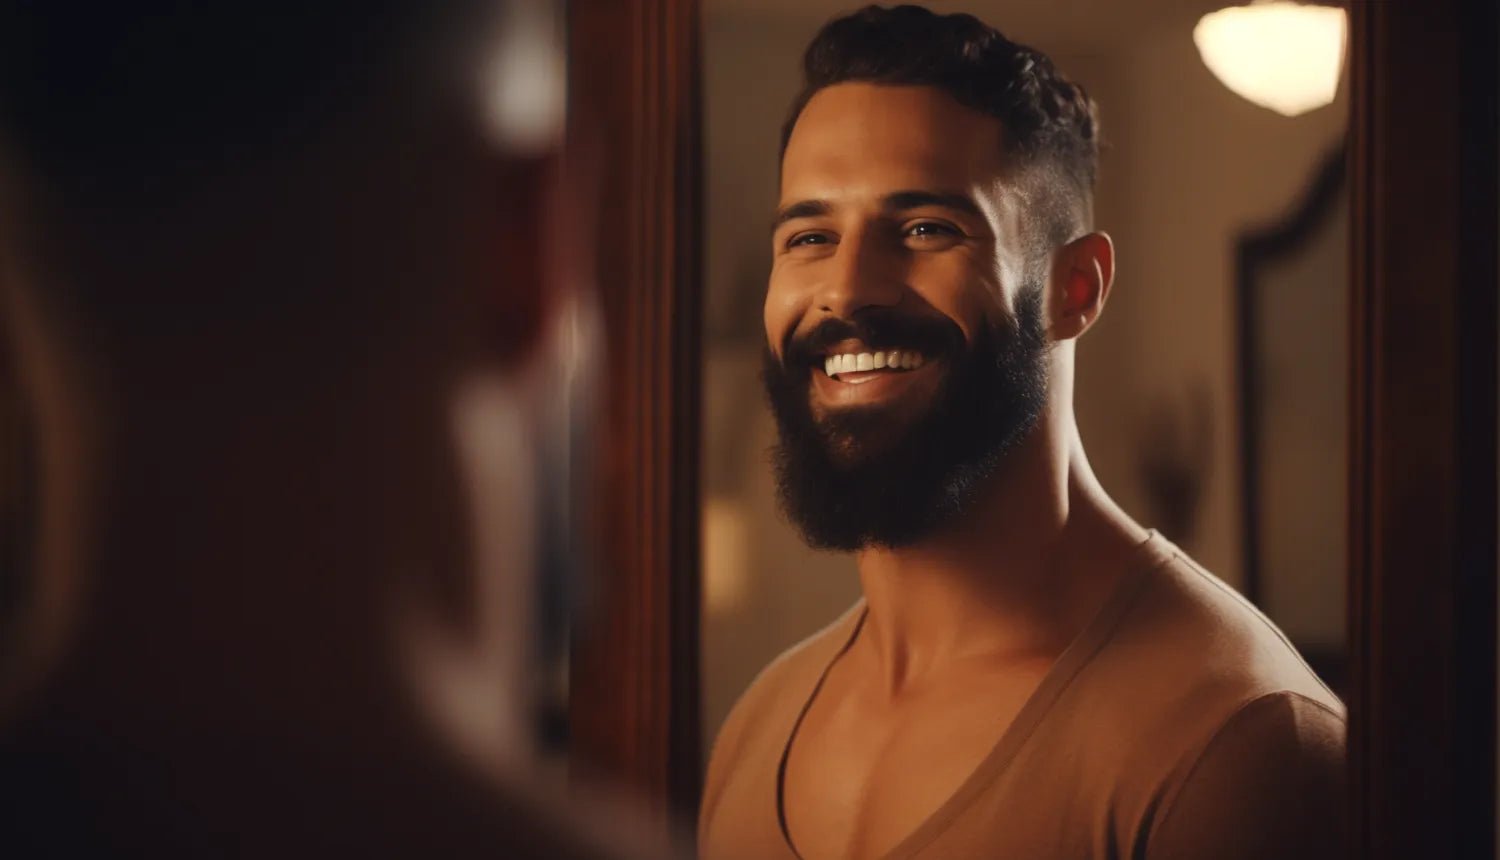 8 dicas para a barba crescer mais rápido - Dr. JONES. Imagem gerada por IA de homem pardo e barbad, cabelo encaracolado e camiseta marrom, sorrindo em frente a um espelho em seu quarto.